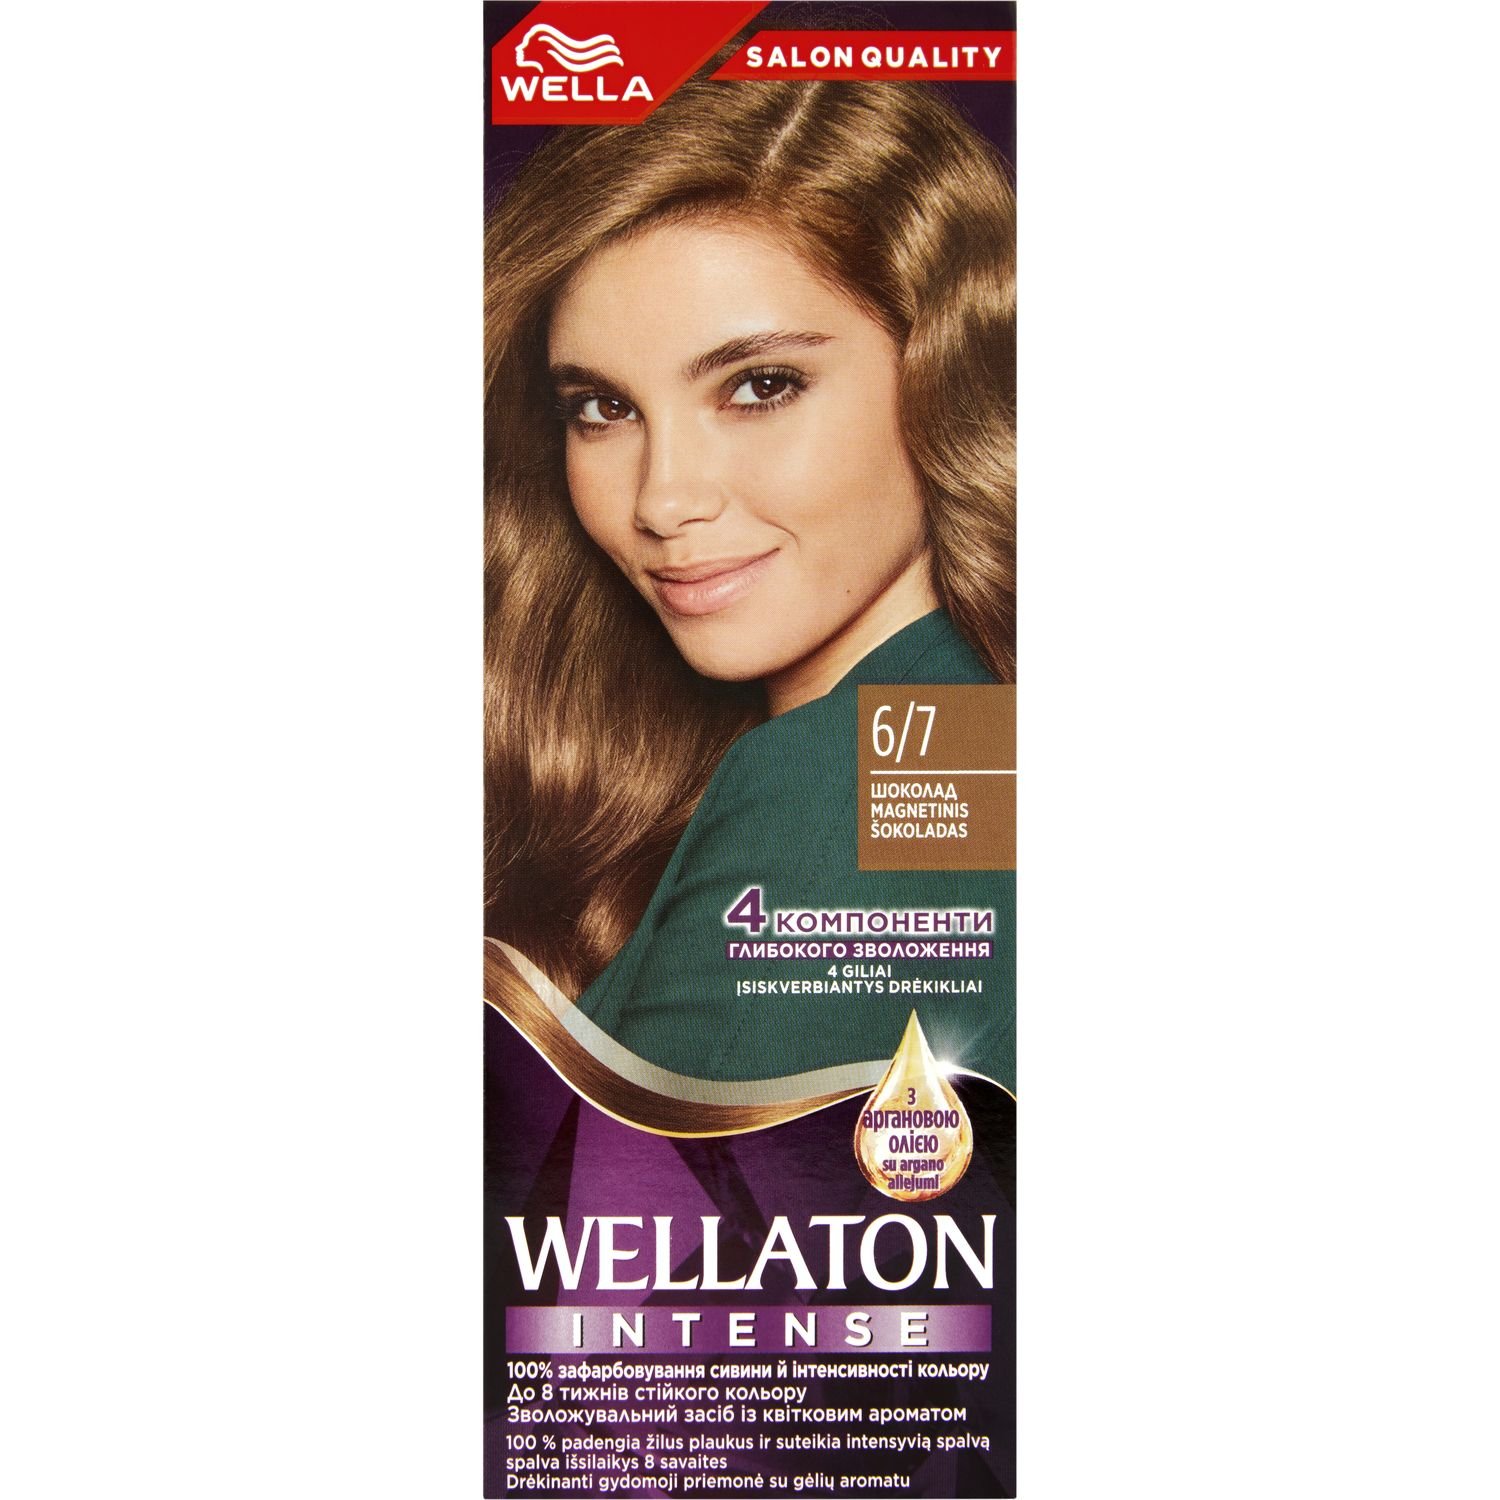 Інтенсивна крем-фарба для волосся Wellaton, відтінок 6/7 (Магнітичний шоколад), 110 мл - фото 1